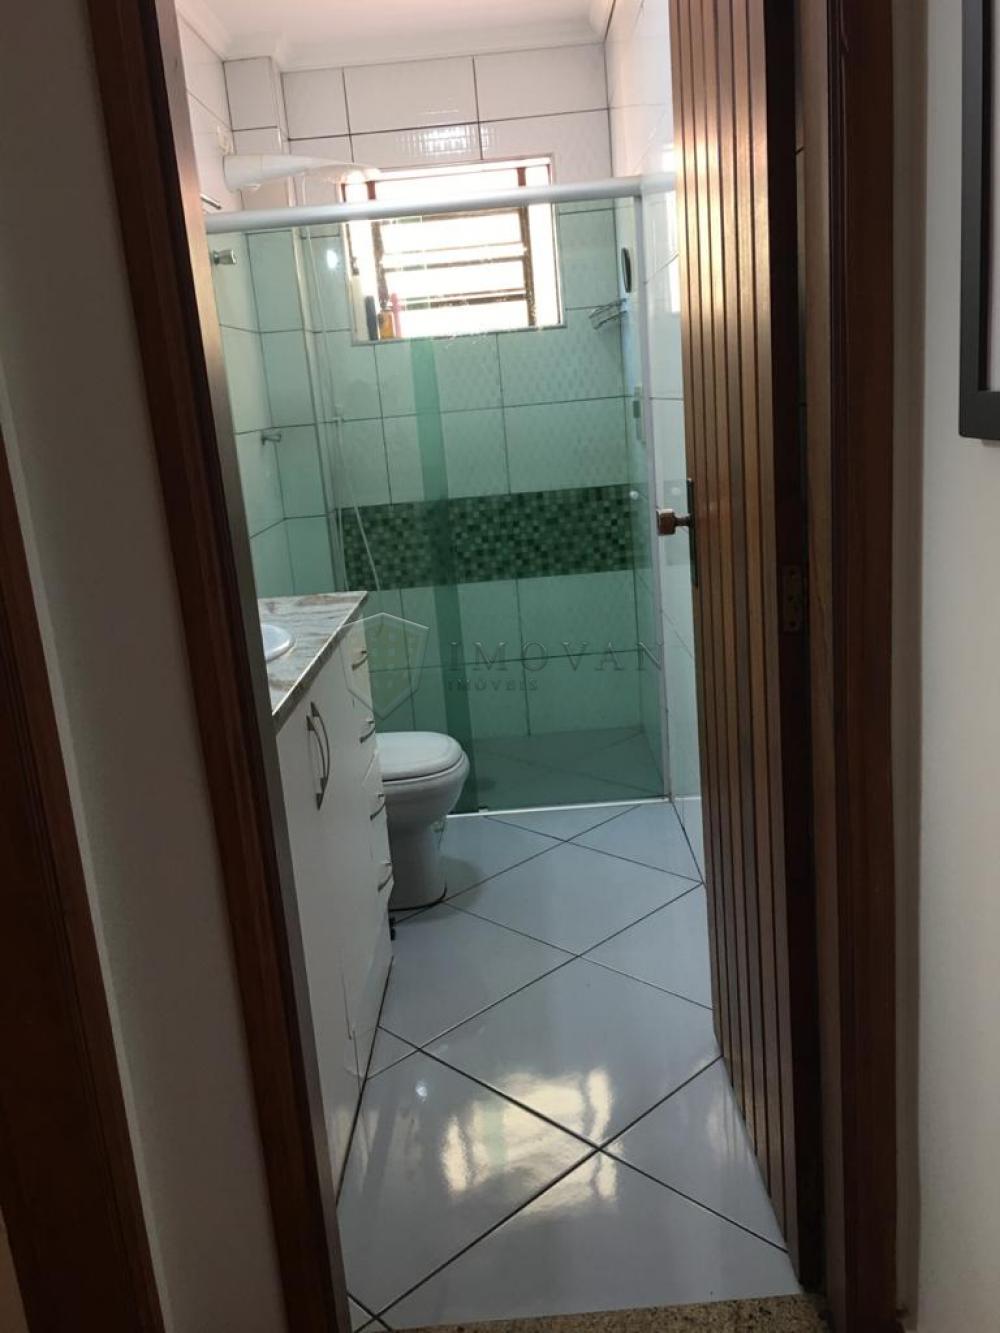 Comprar Apartamento / Padrão em Ribeirão Preto R$ 260.000,00 - Foto 11